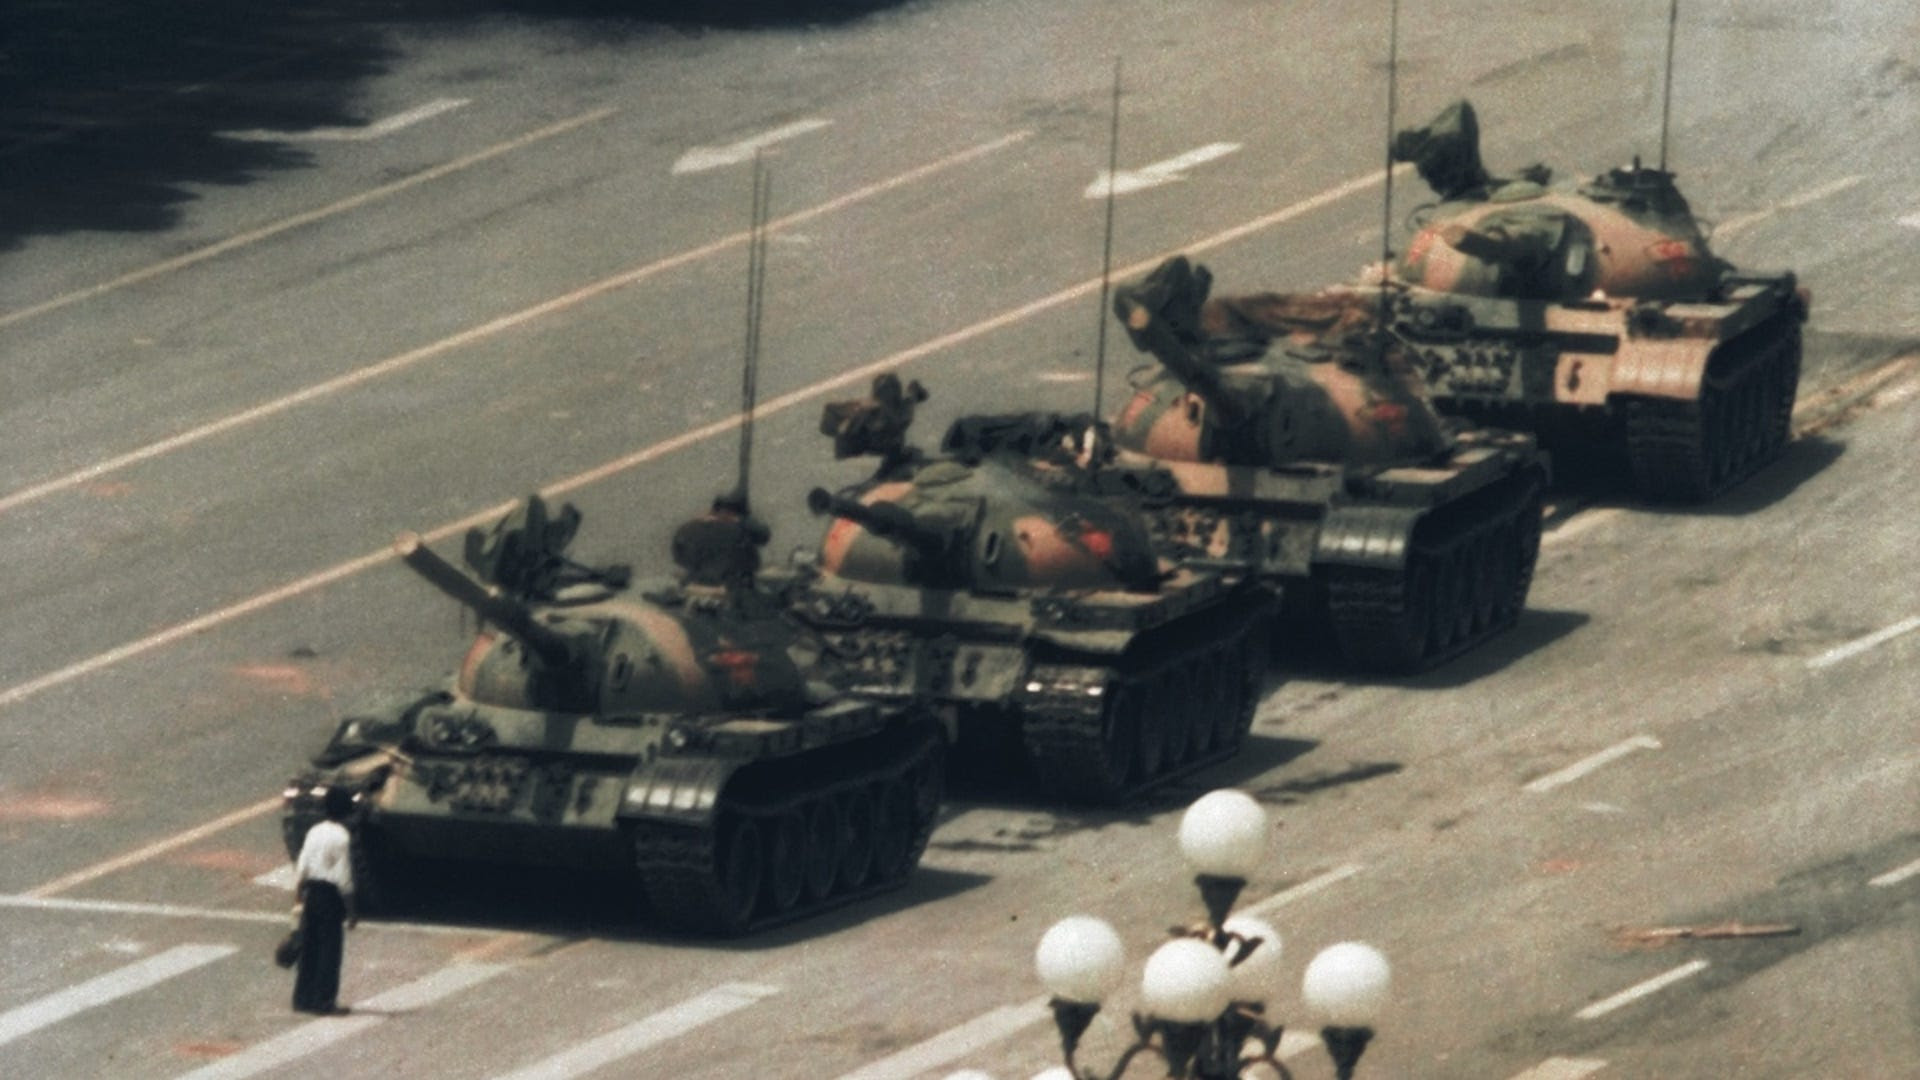  Matt Ehret on the Tiananmen Square Hoax Https%3A%2F%2Fsubstack-post-media.s3.amazonaws.com%2Fpublic%2Fimages%2F0fd839fd-ff25-428e-97b4-459c1d59212d_1920x1080